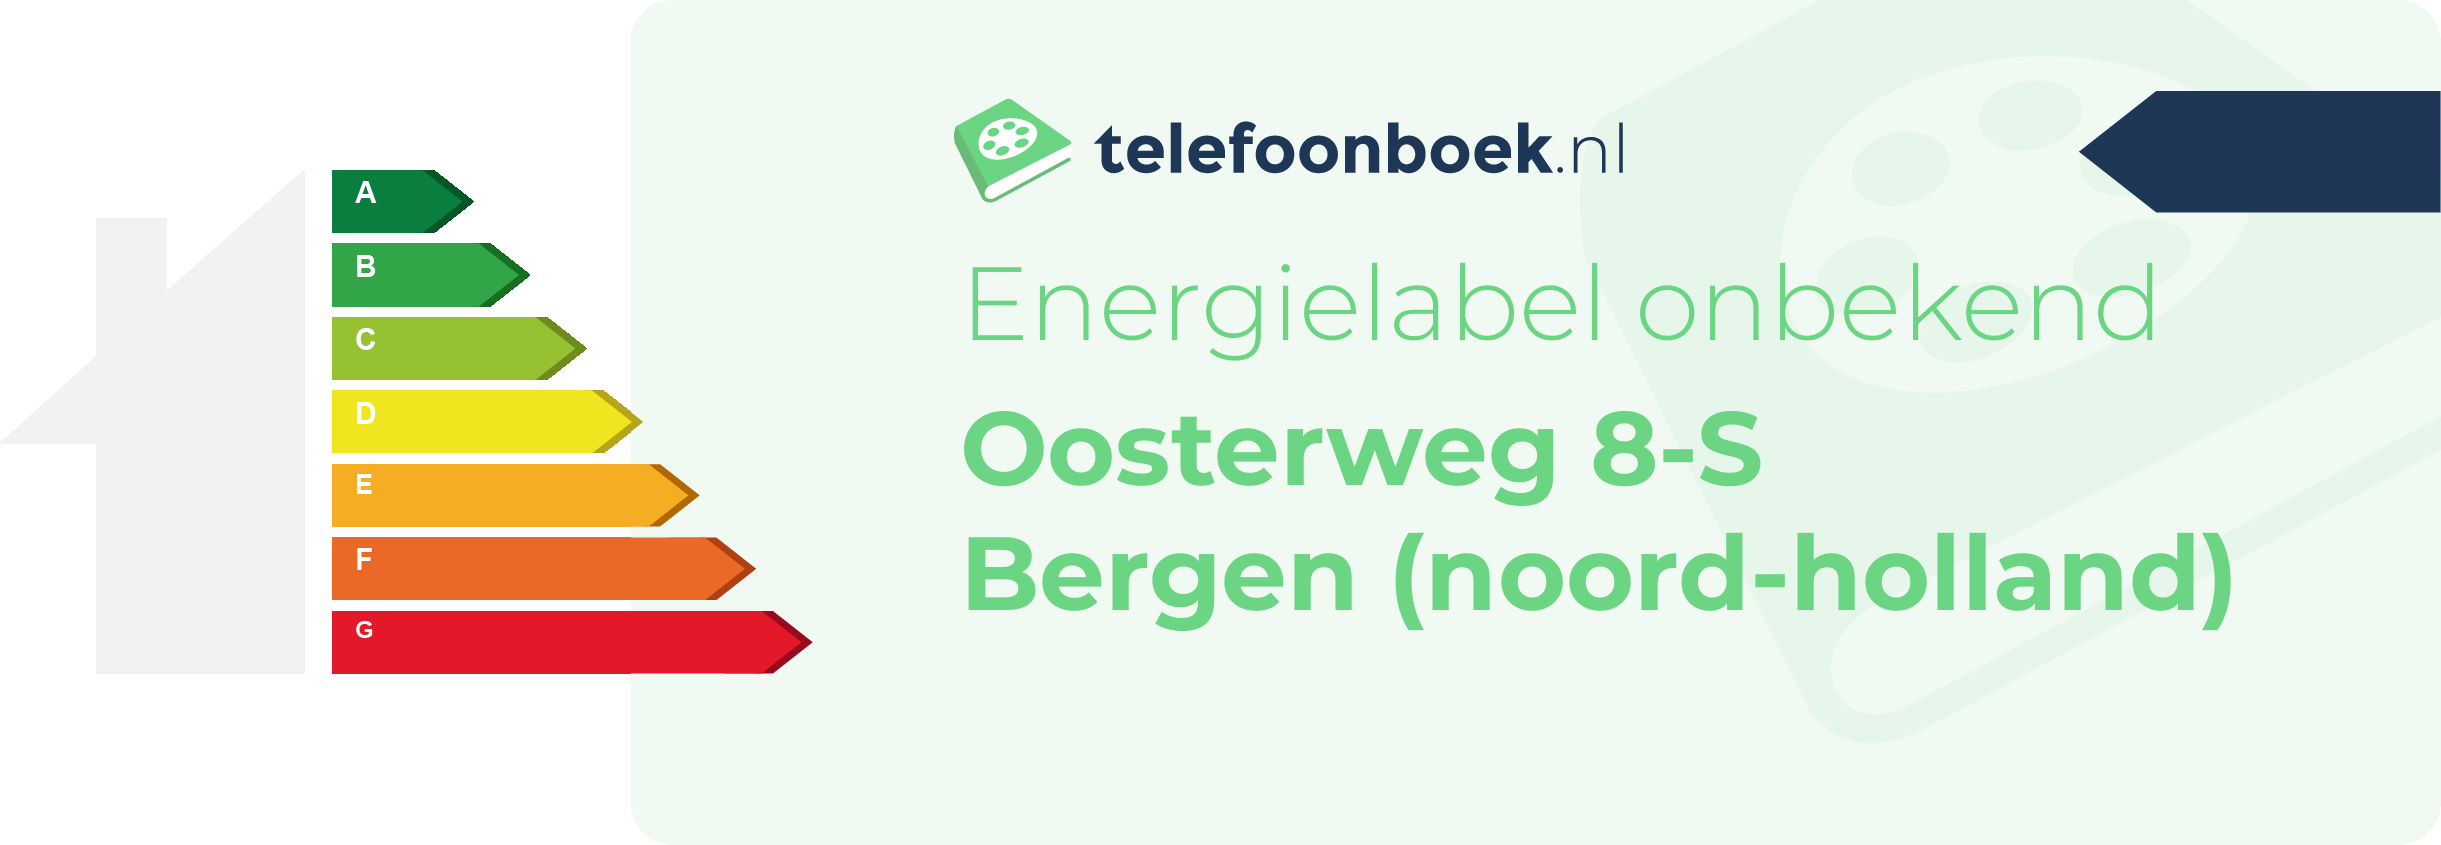 Energielabel Oosterweg 8-S Bergen (Noord-Holland)